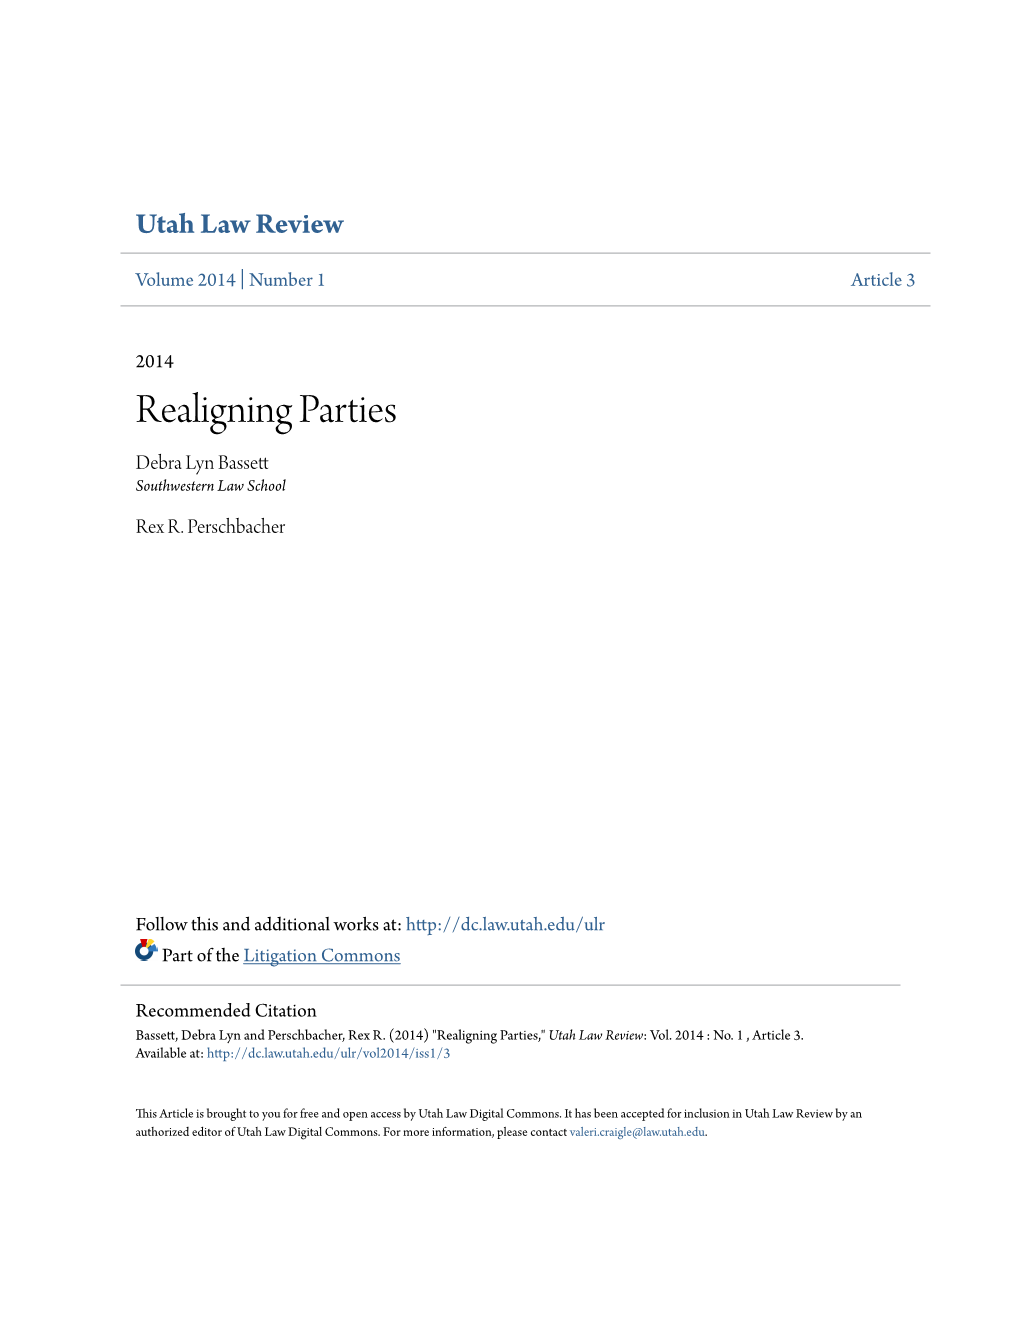 Realigning Parties Debra Lyn Bassett Southwestern Law School